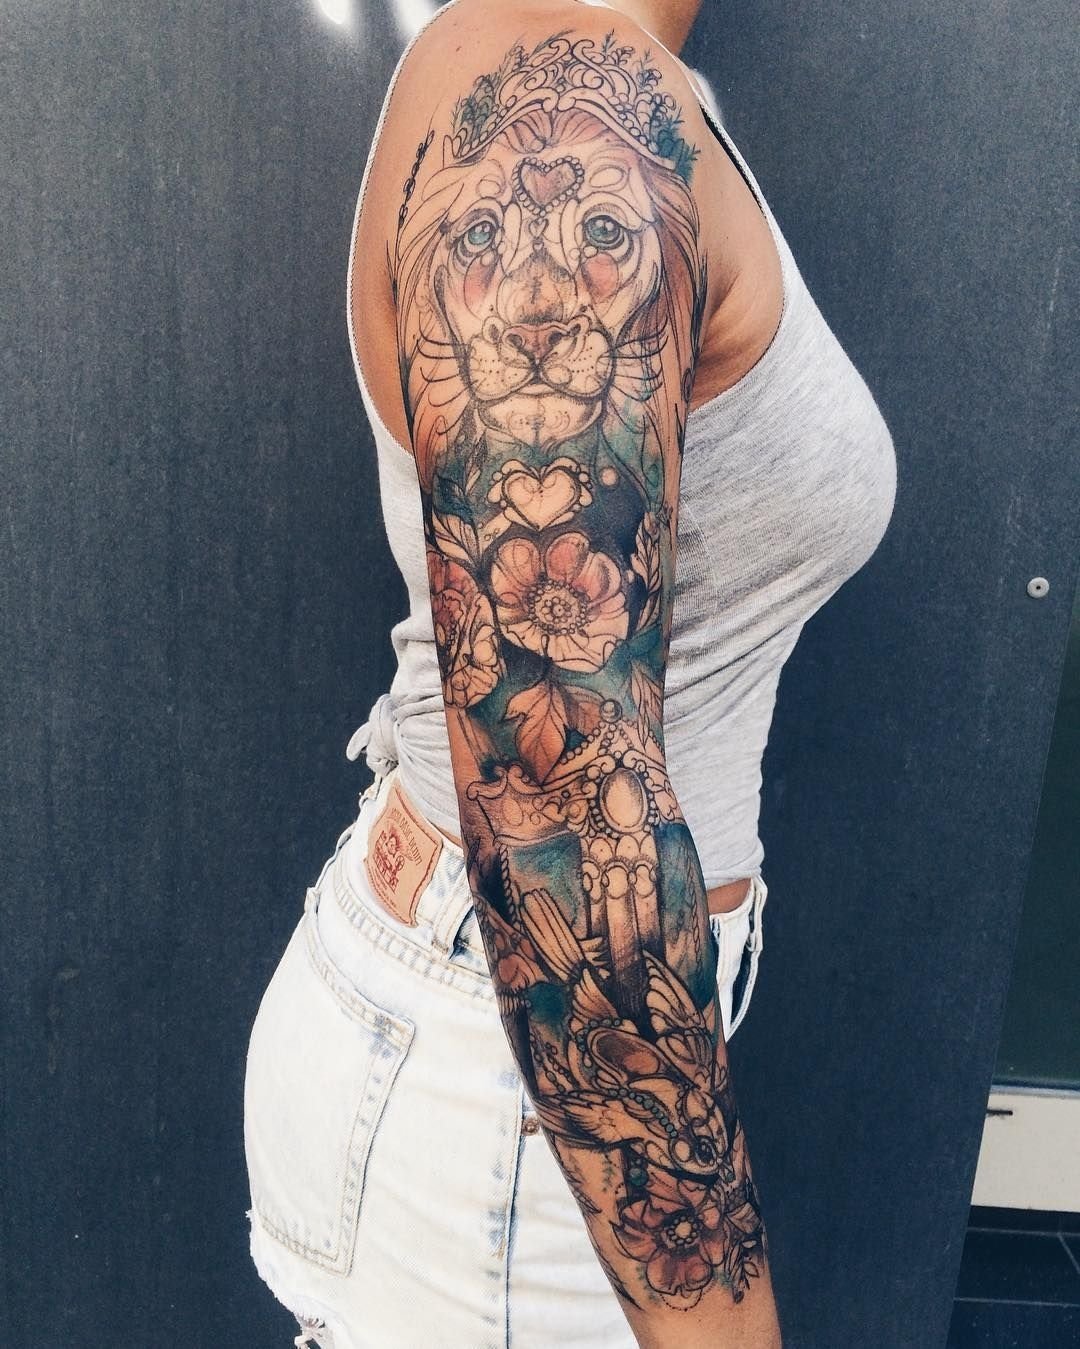 10 Spectacular Sleeve Tattoo Ideas For Girls ver esta foto do instagram de pliszkamagdalena e280a2 2545 curtidas 2022